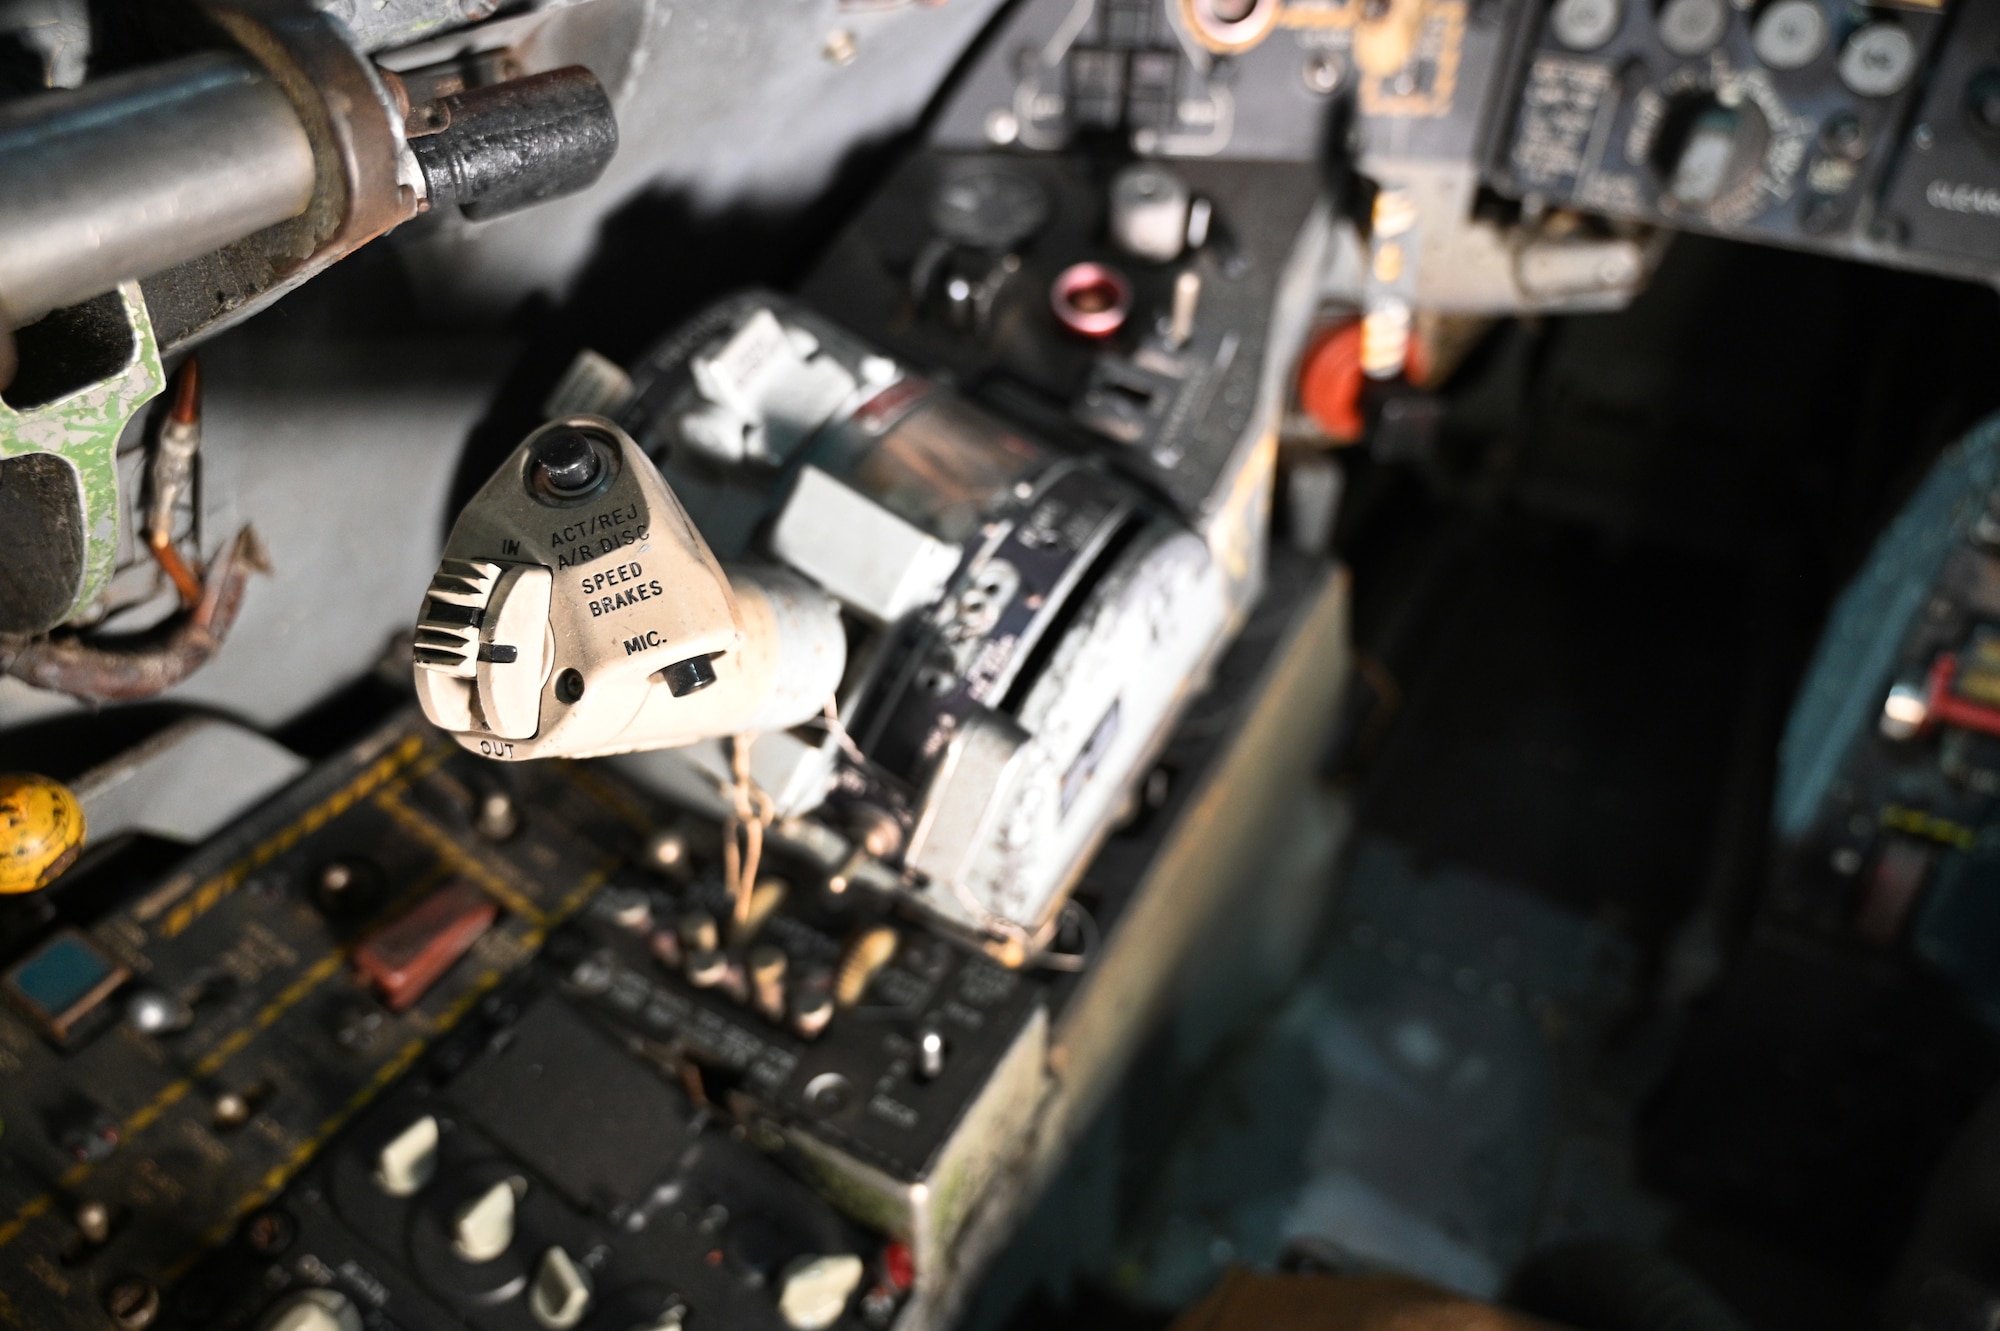 Republic F-105D Thunderchief cockpit view